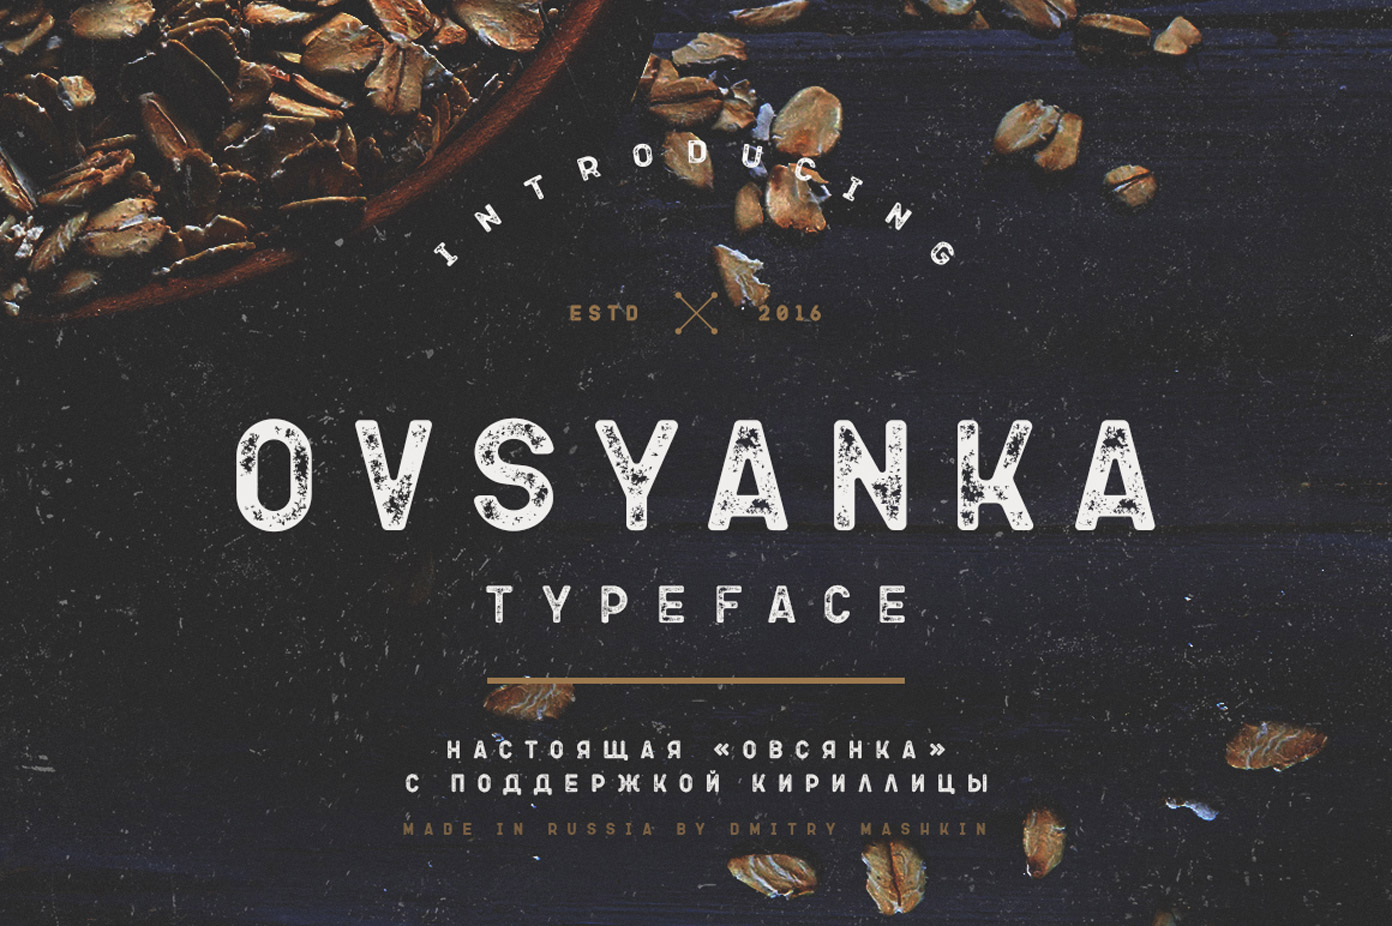 Ovsyanka Typeface